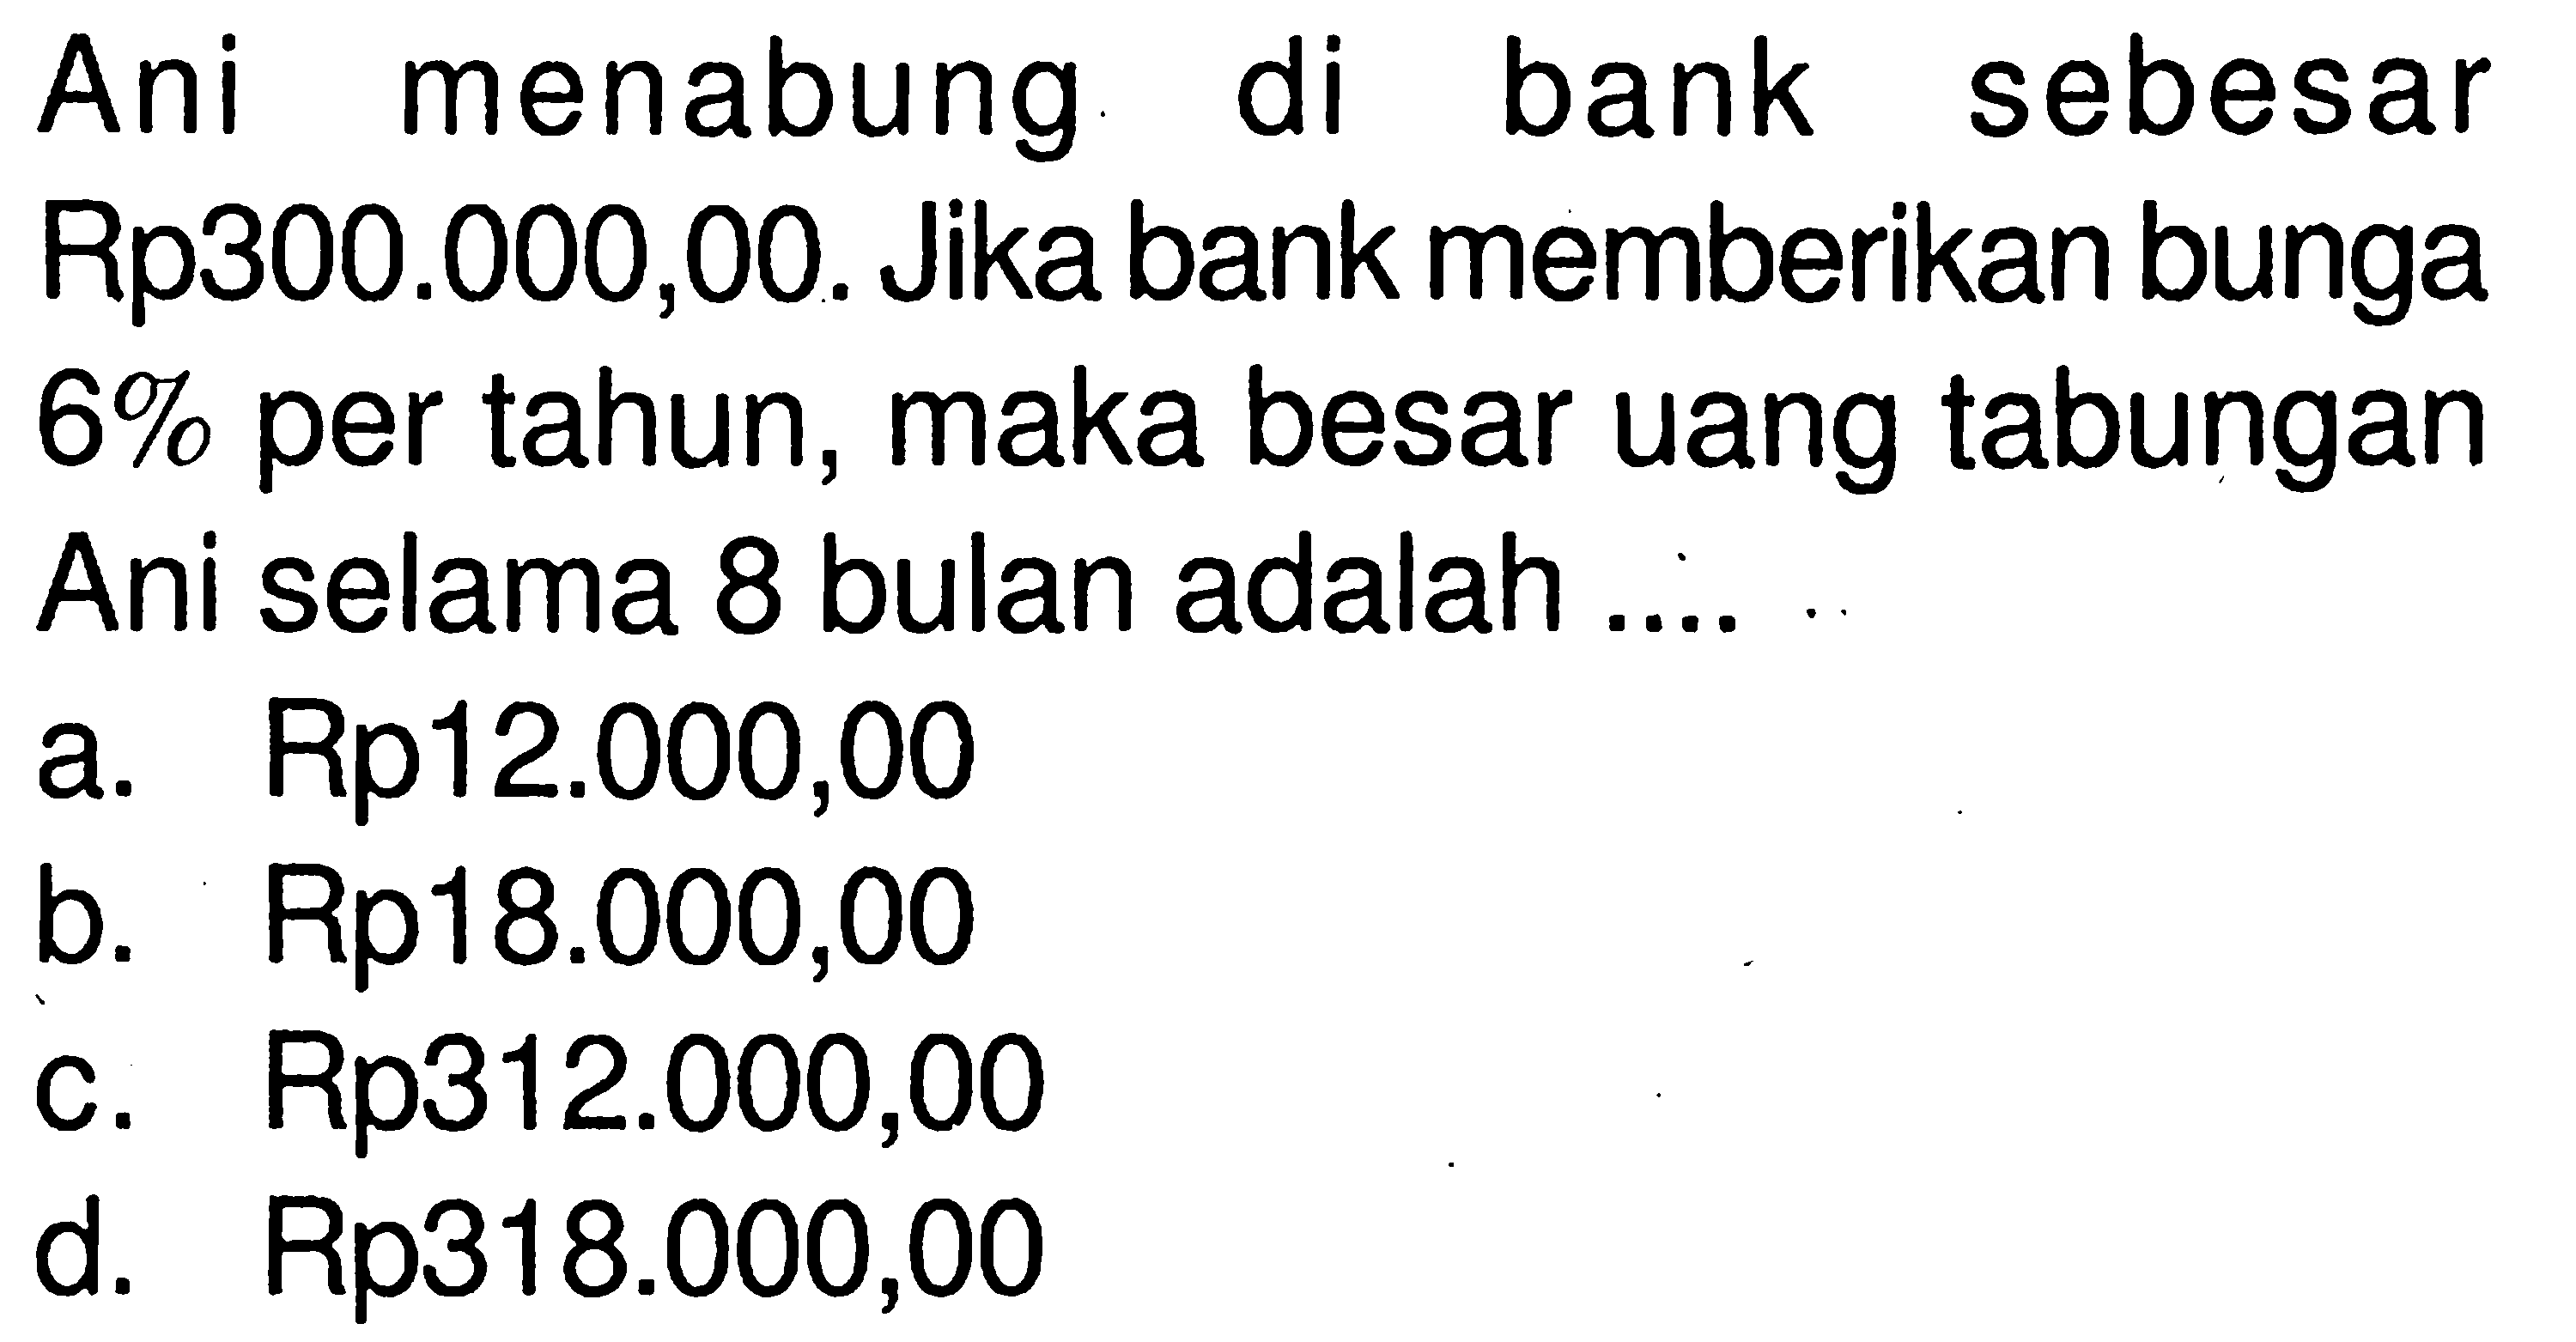 Ani menabung di bank sebesar Rp300.000,00. Jika bank memberikan bunga 6% per tahun, maka besar uang tabungan Ani selama 8 bulan adalah ....